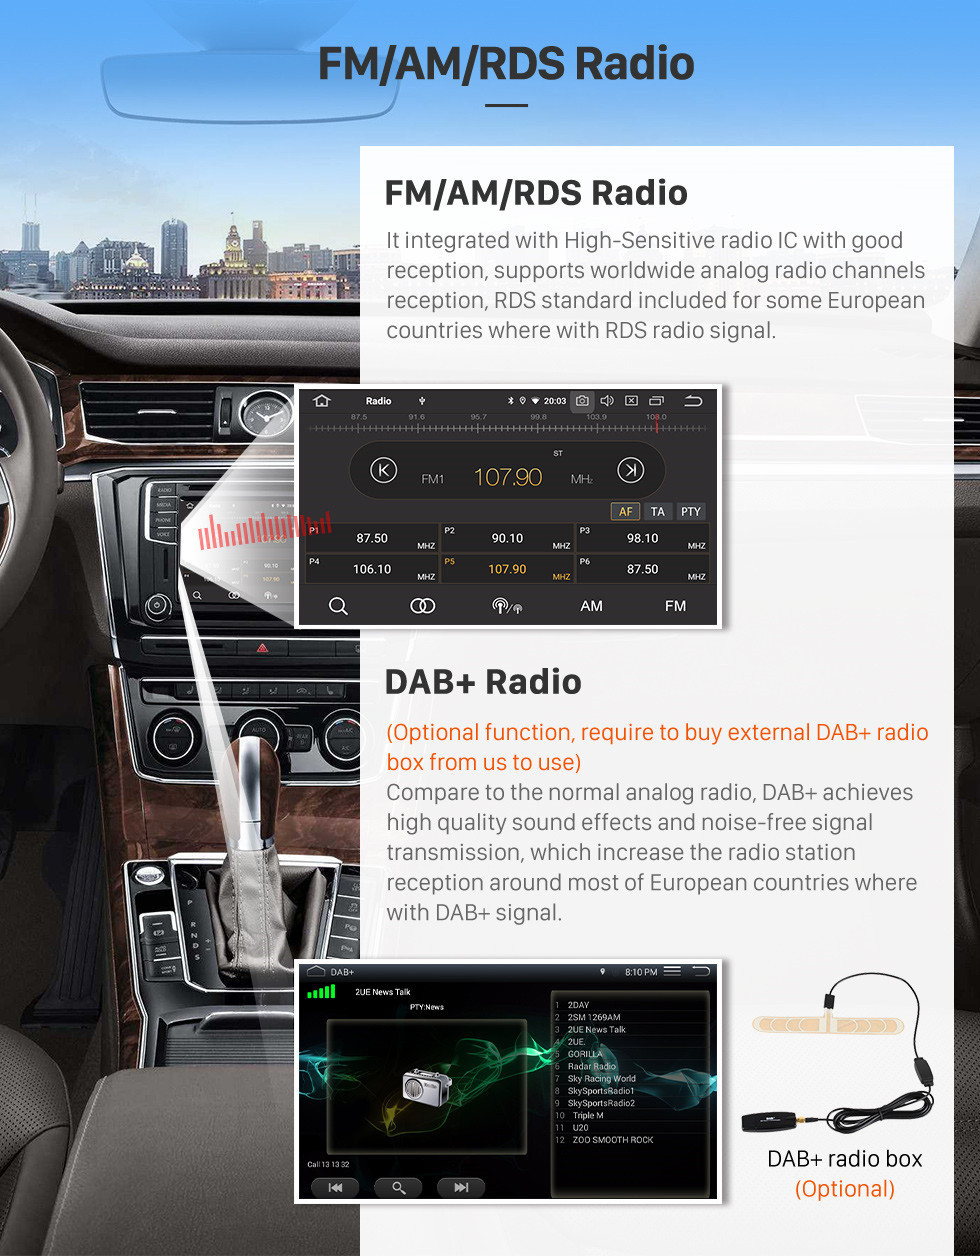 Seicane Pantalla táctil HD Radio de navegación GPS Android 10.0 de 8 pulgadas para 1998-2006 BMW Serie 3 E46 M3 / 2001-2004 MG ZT / 1999-2004 Rover 75 con Carplay Bluetooth compatible con TPMS